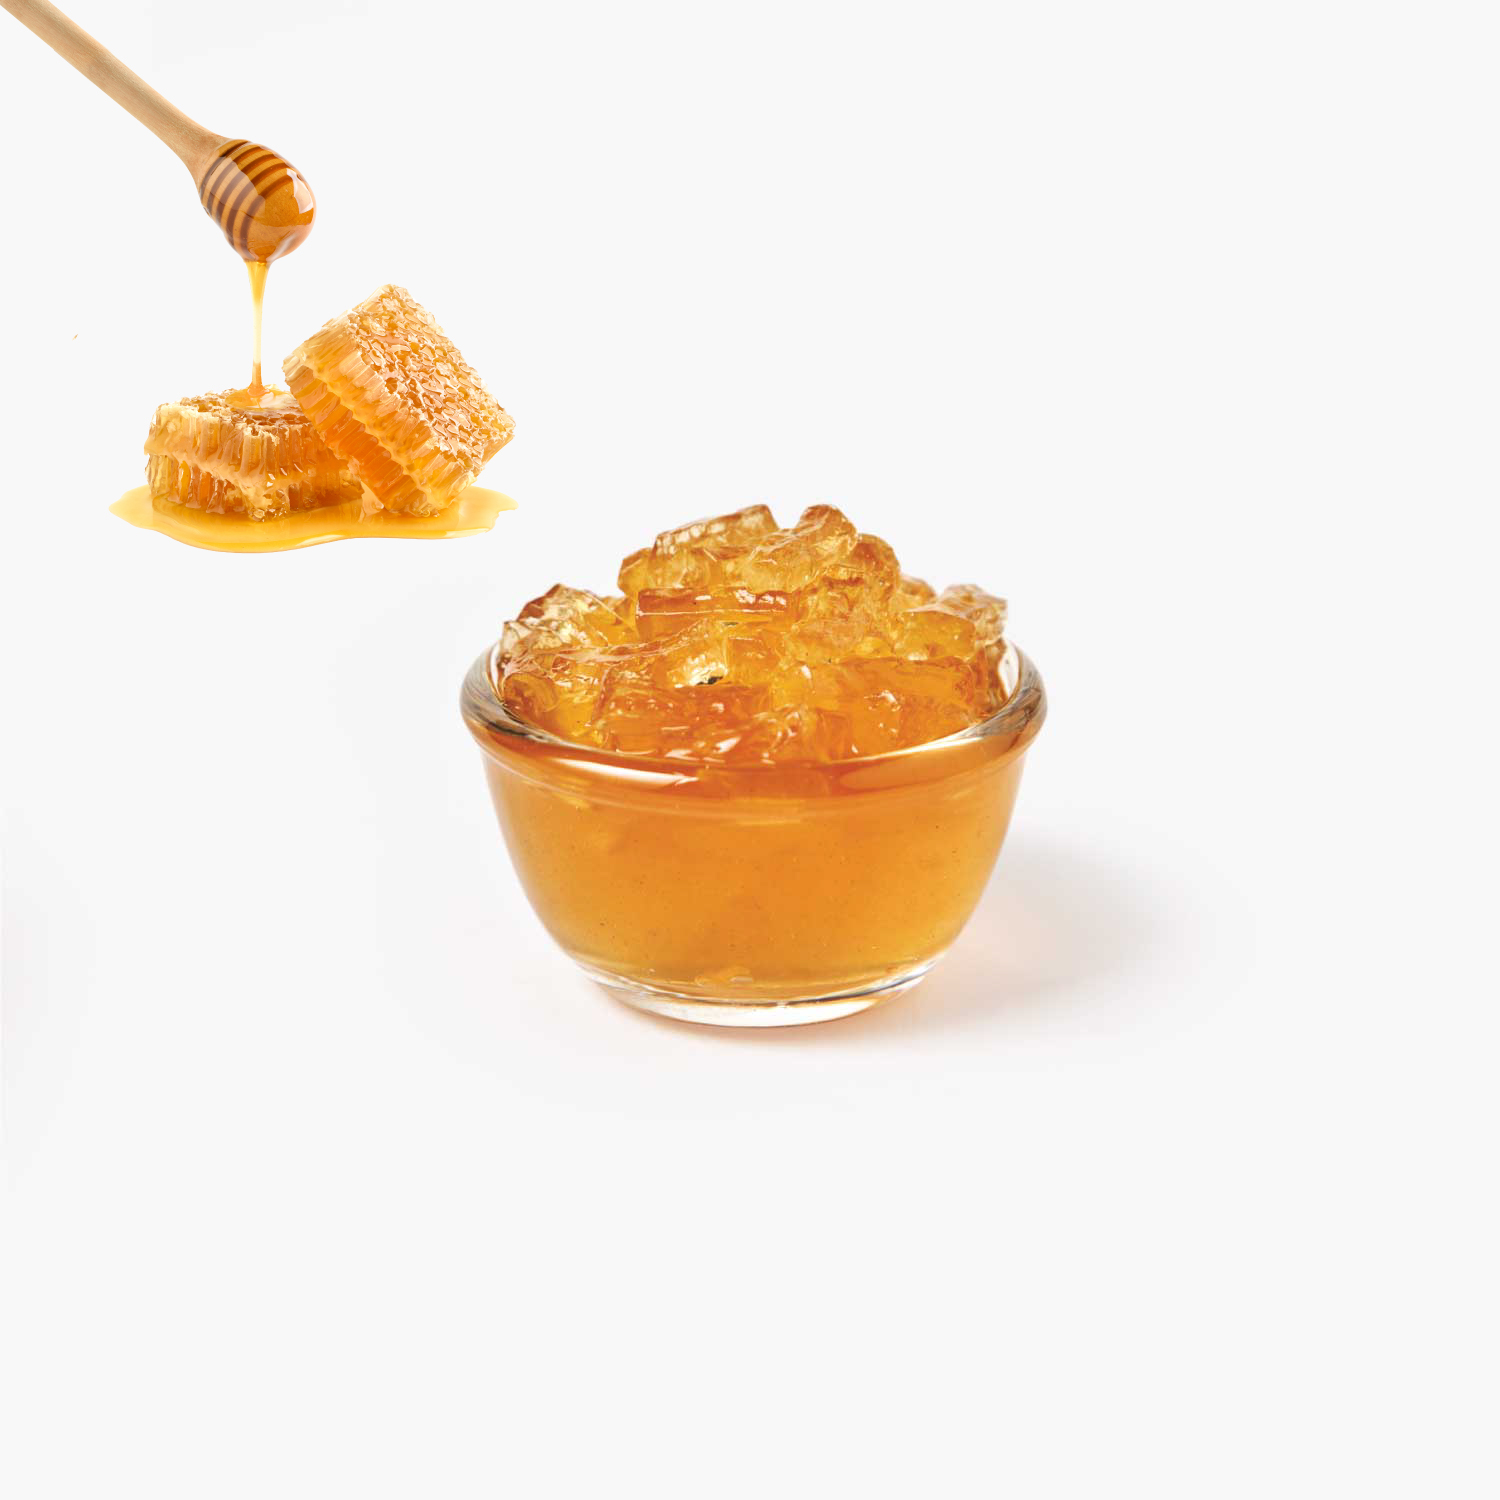 ท็อปปิ้ง : SYNOVA เจลลี่คอนยัค รสชาติน้ำผึ้ง (ถุง)